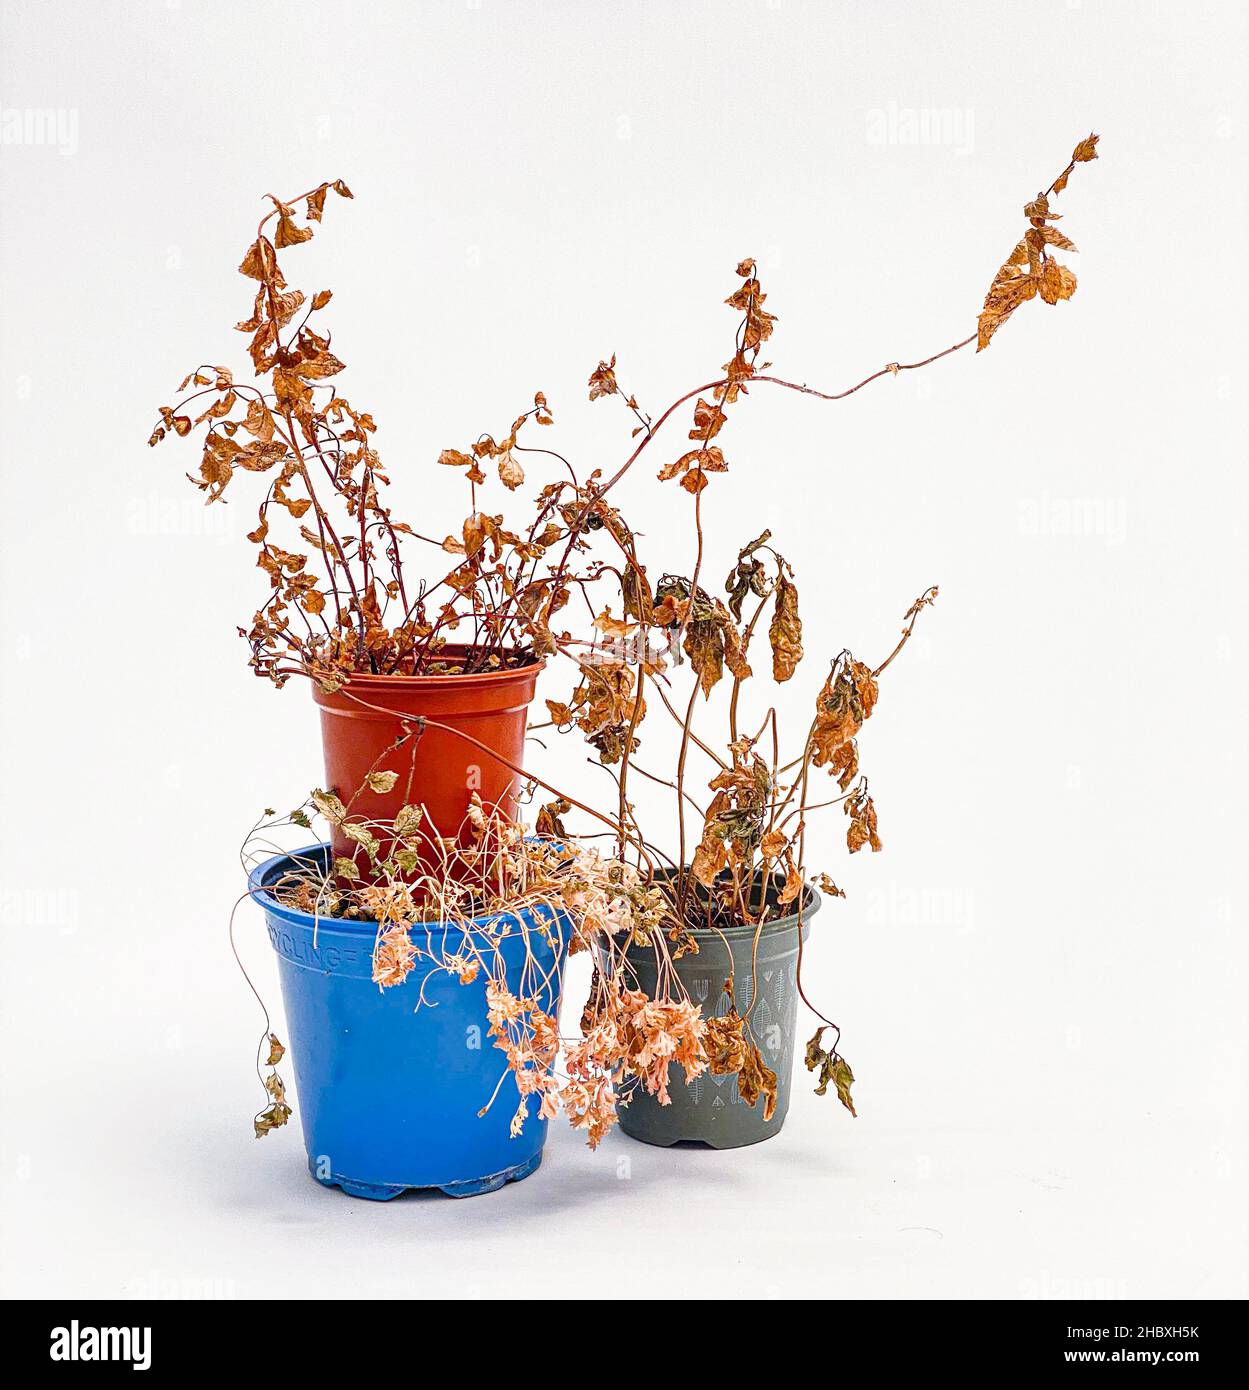 Plante séchée et morte négligée dans une marmite en plastique bleu et rouge Banque D'Images